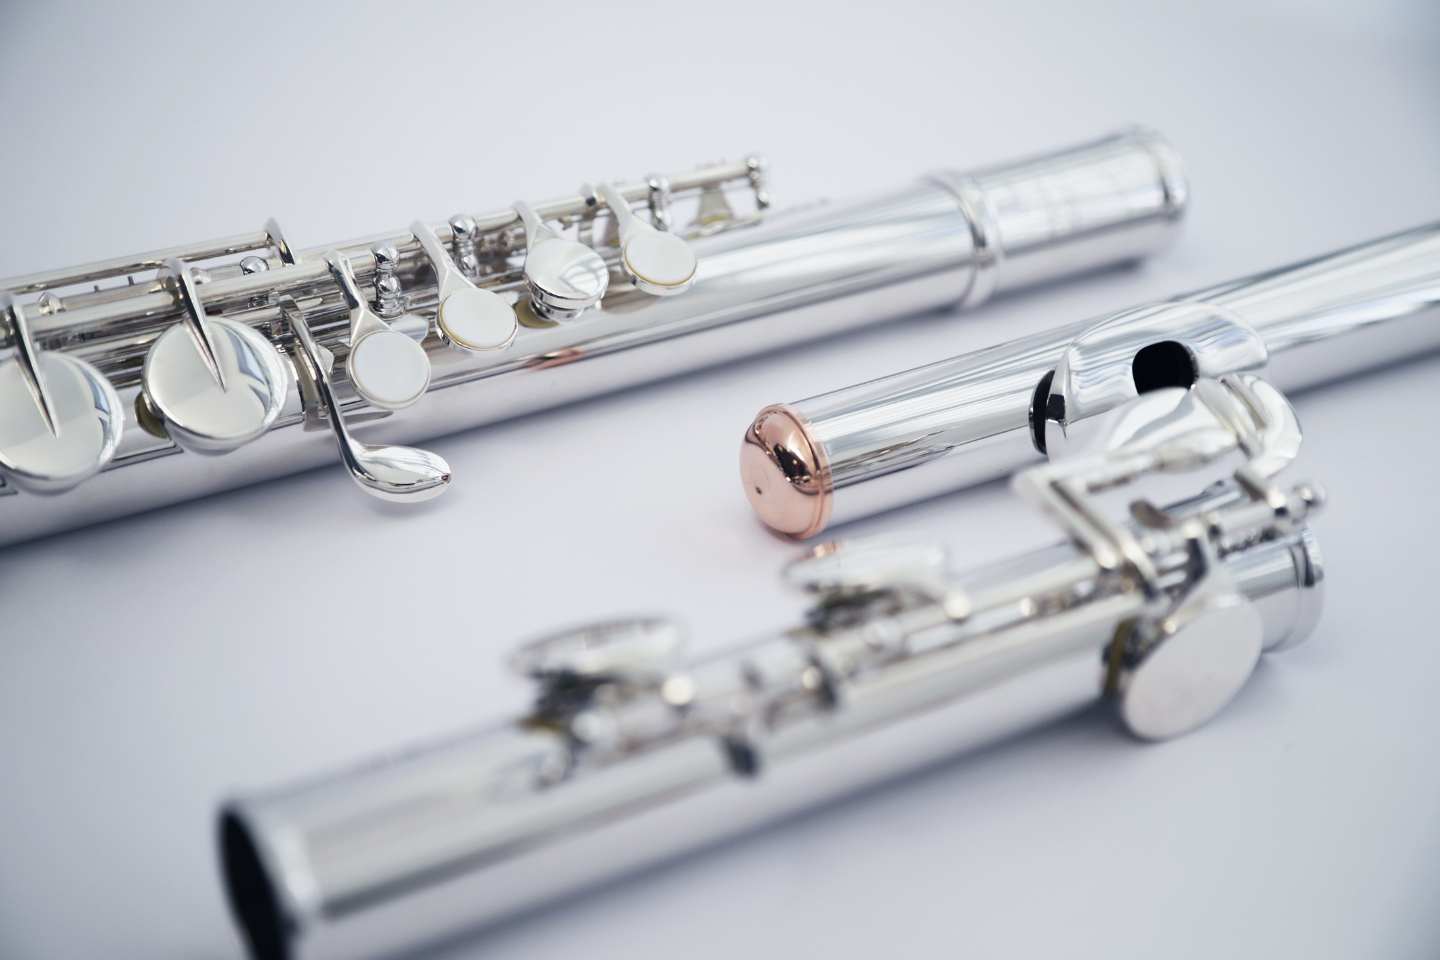 Tipos de Flauta